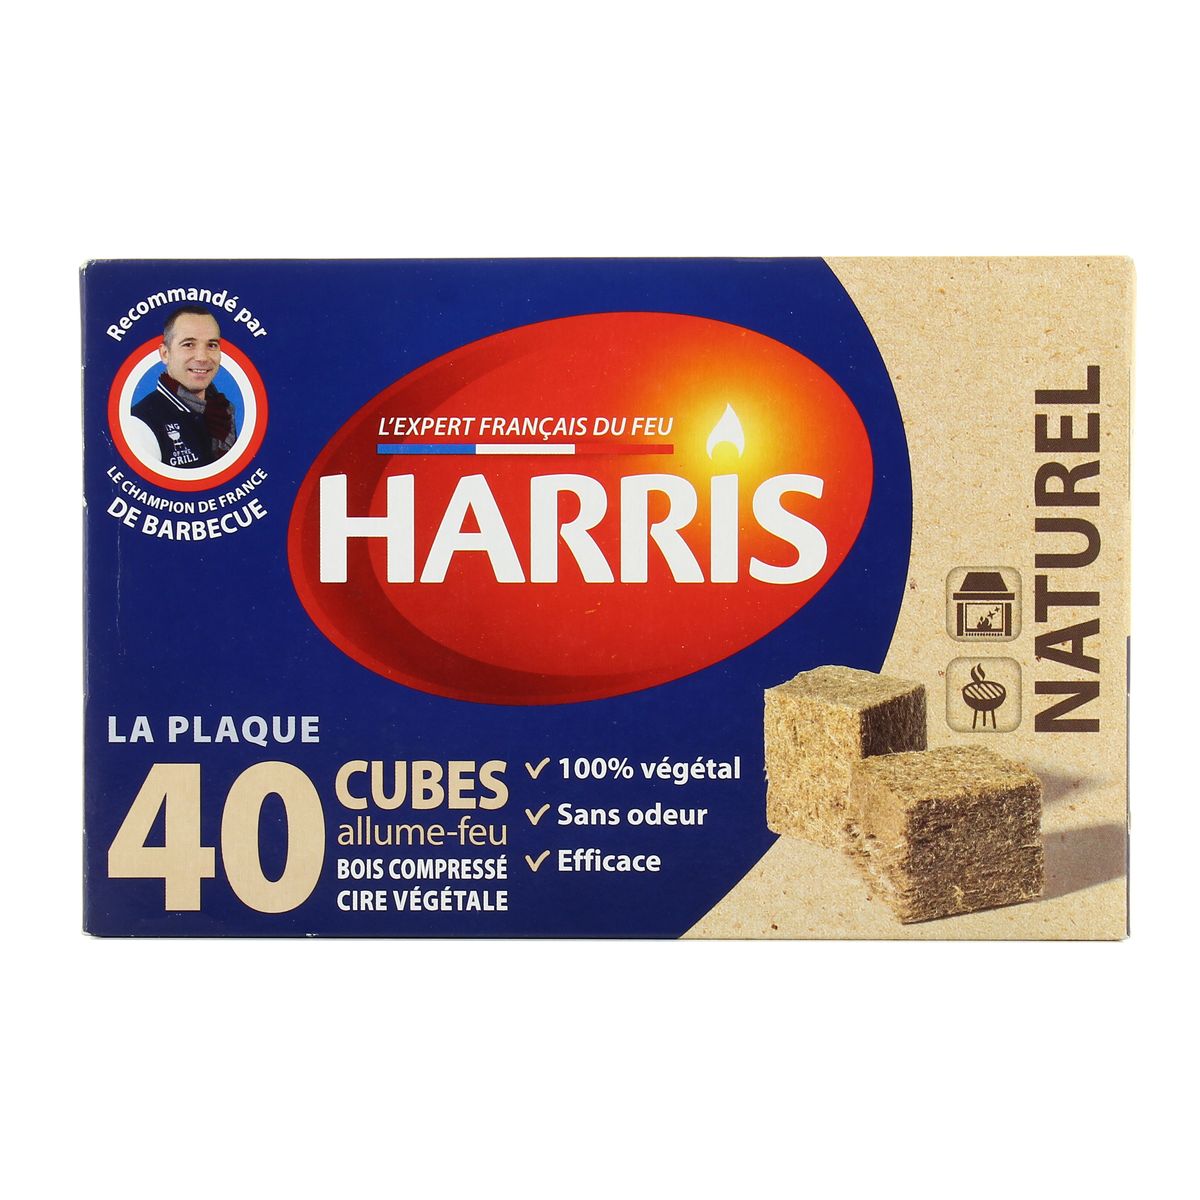 Acheter Harris Cubes allume-feu sans odeur 100% naturel, 40 pièces